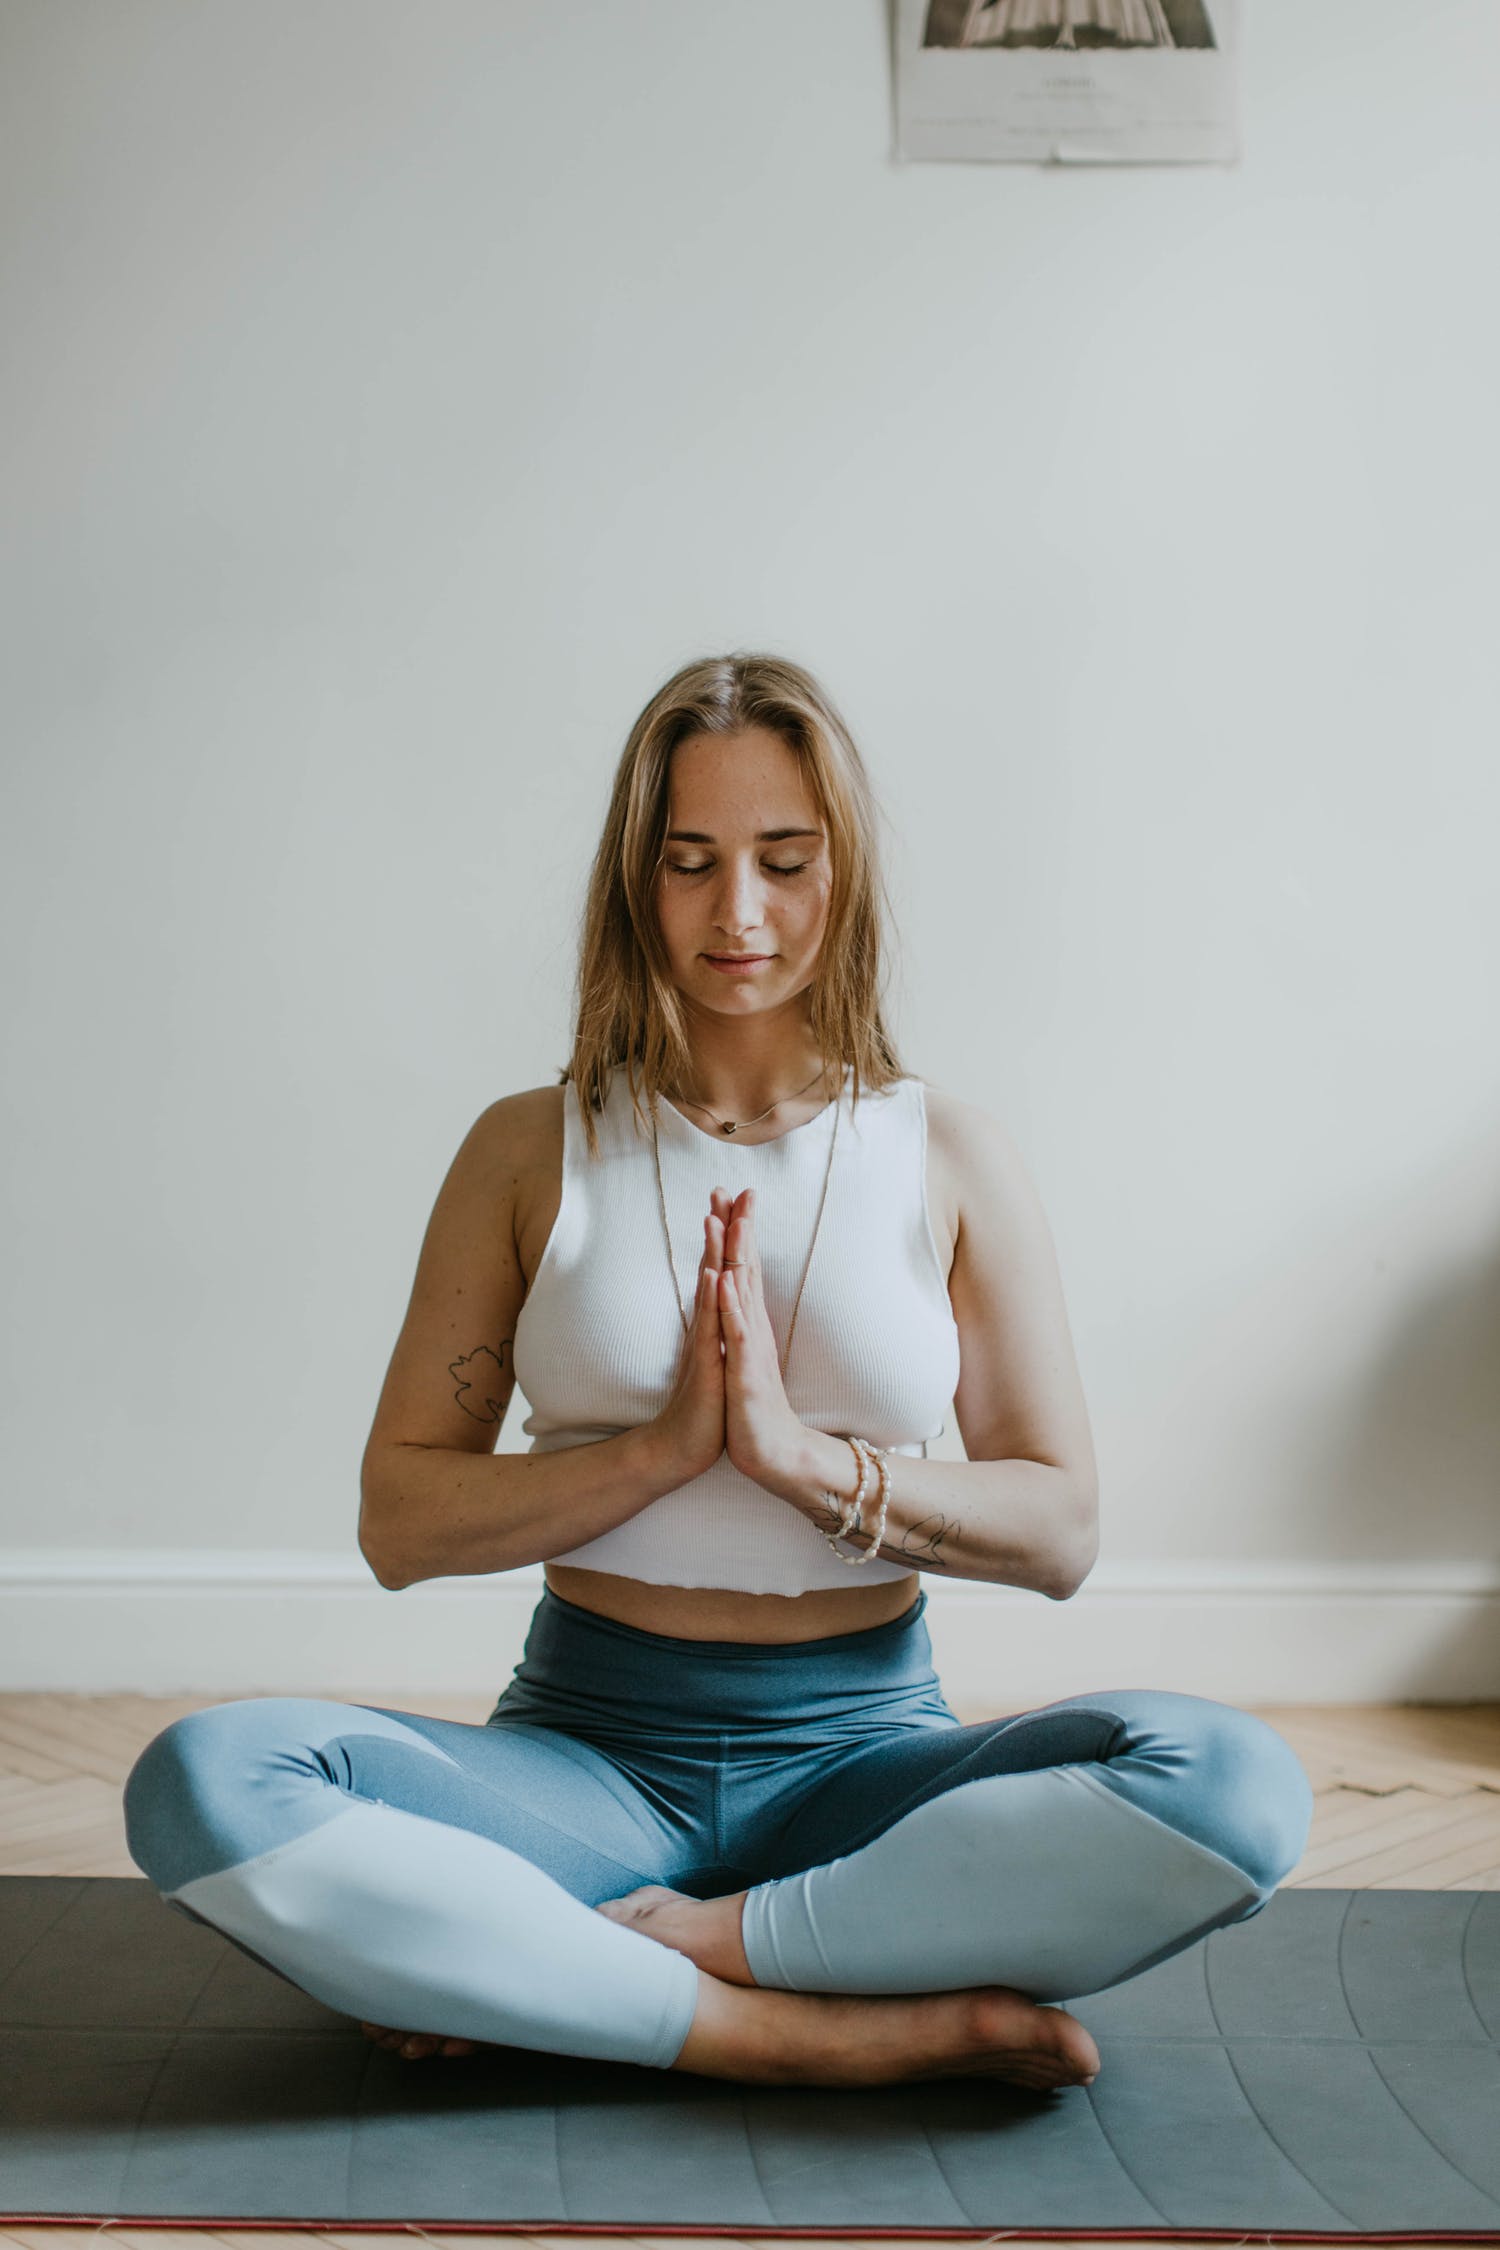 Comment apprendre le yoga seul a la maison ?